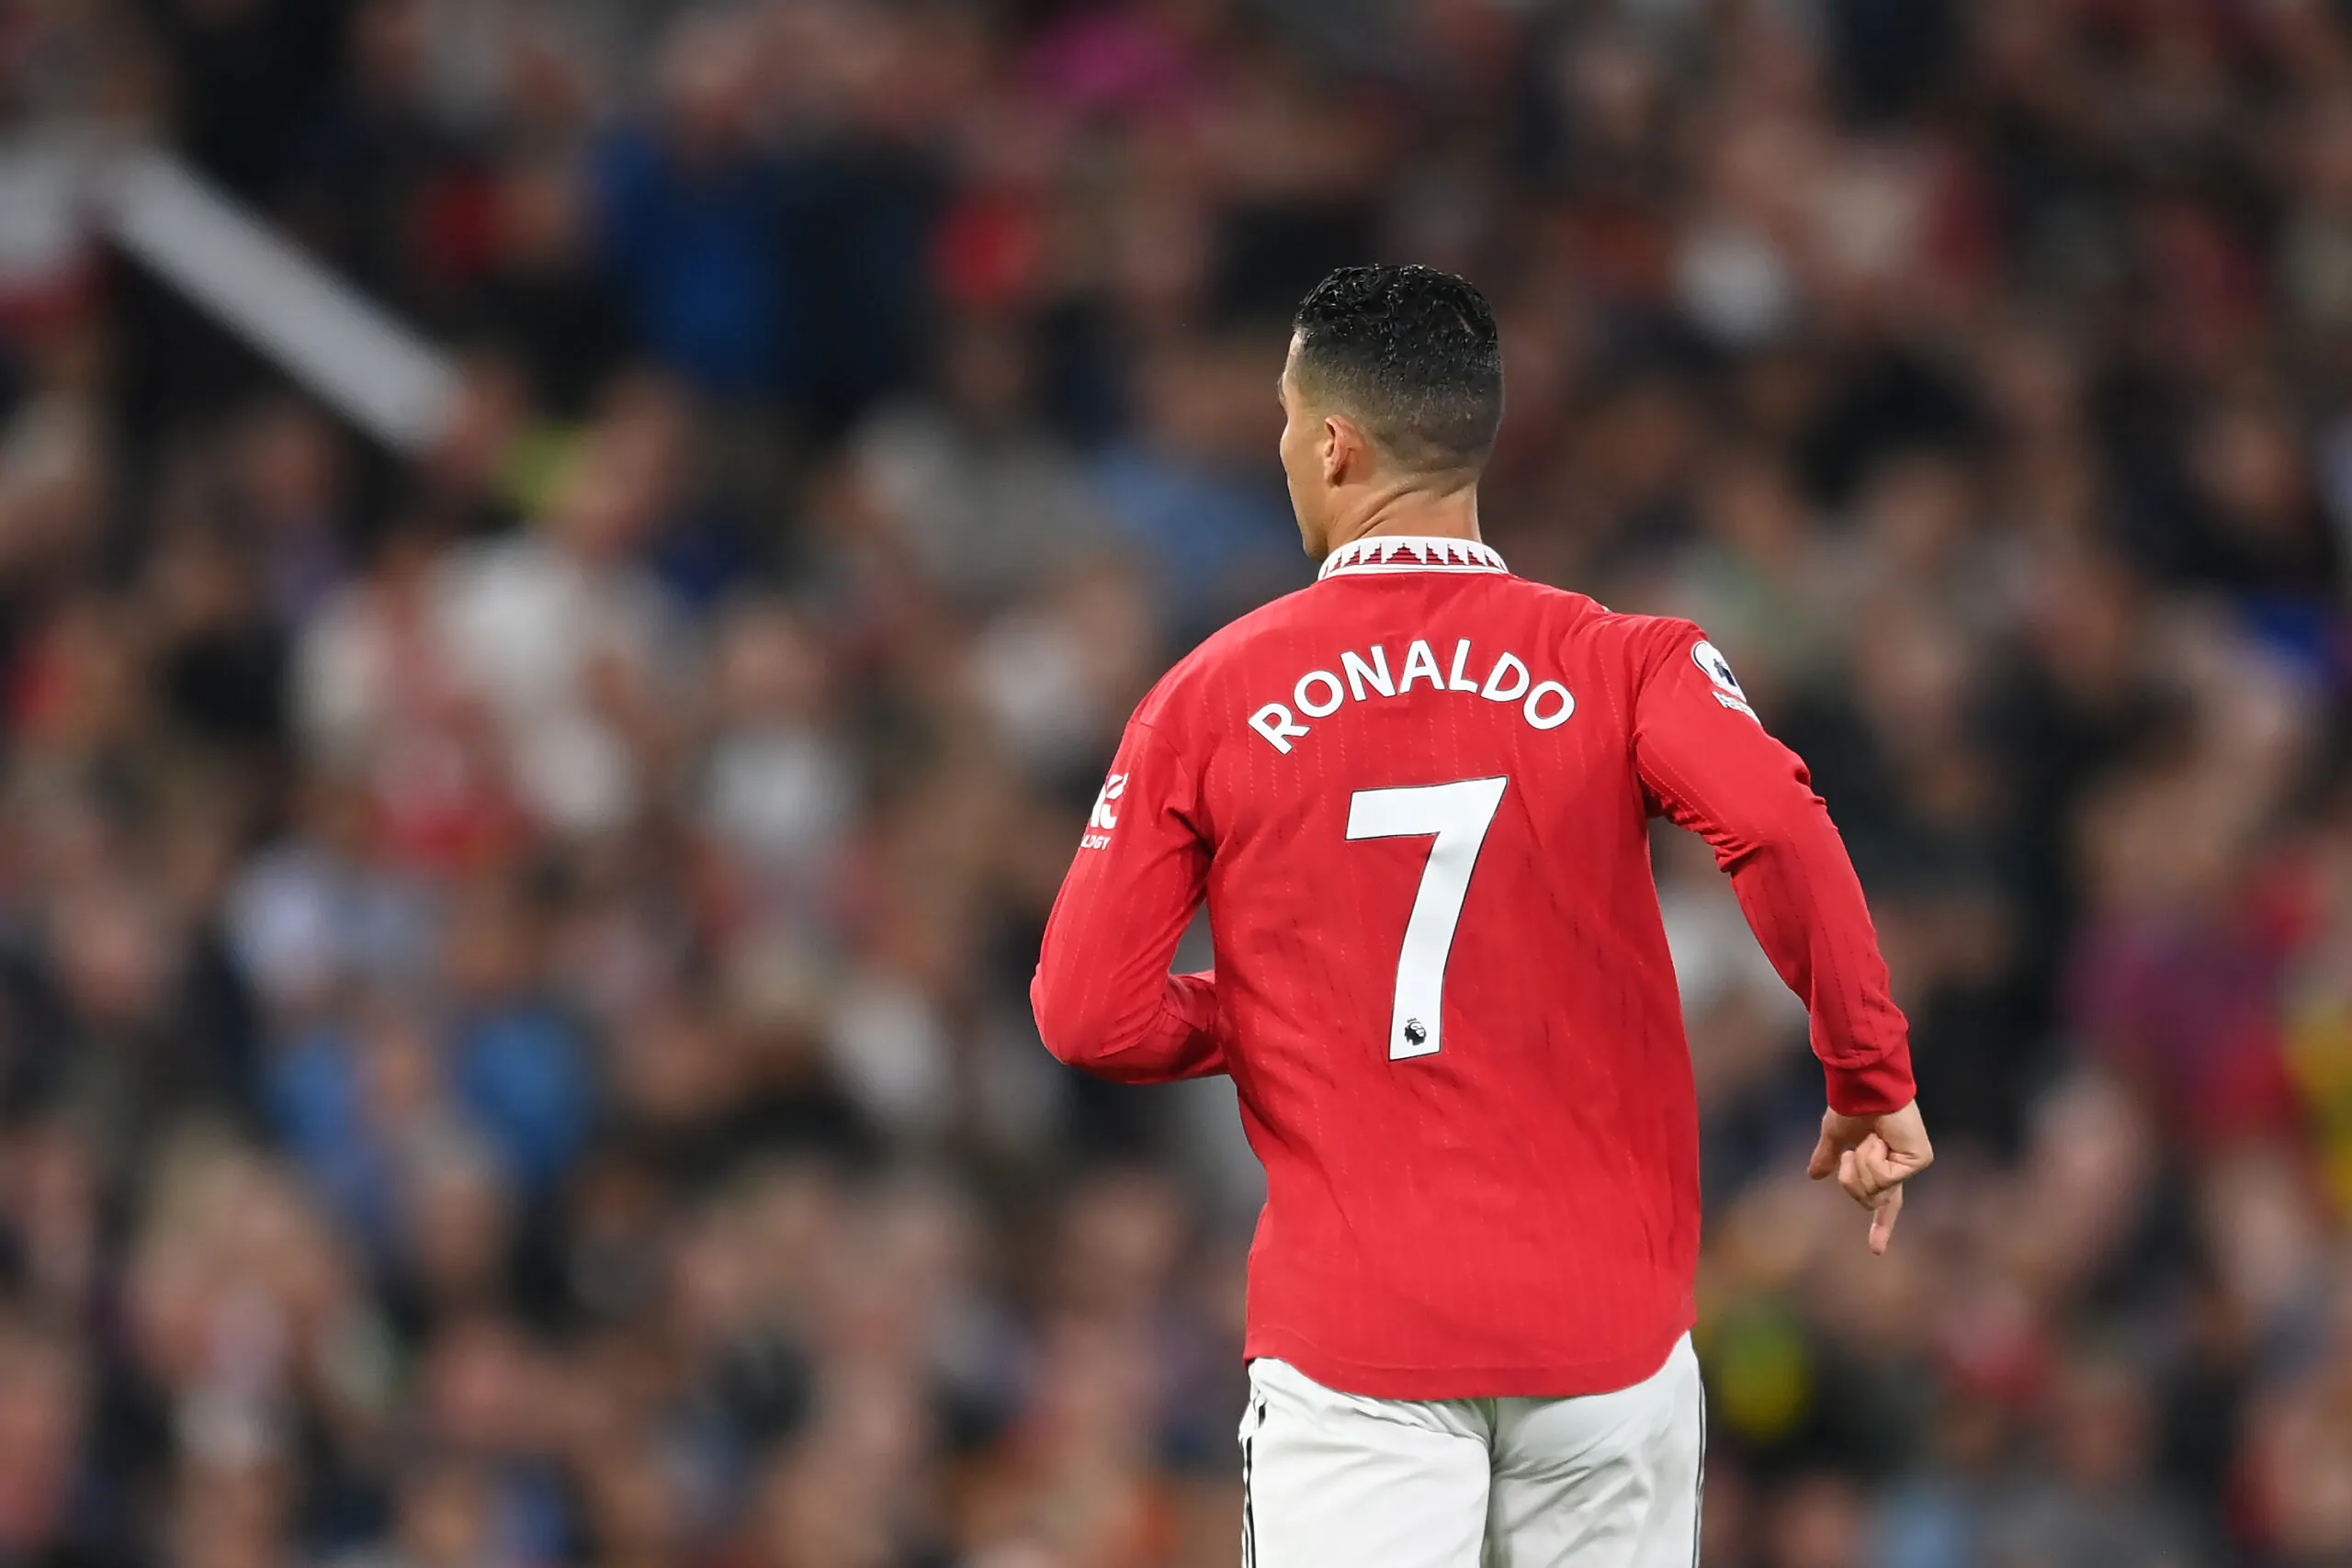 Intervista Ronaldo, il Manchester United prende posizione: i dettagli!